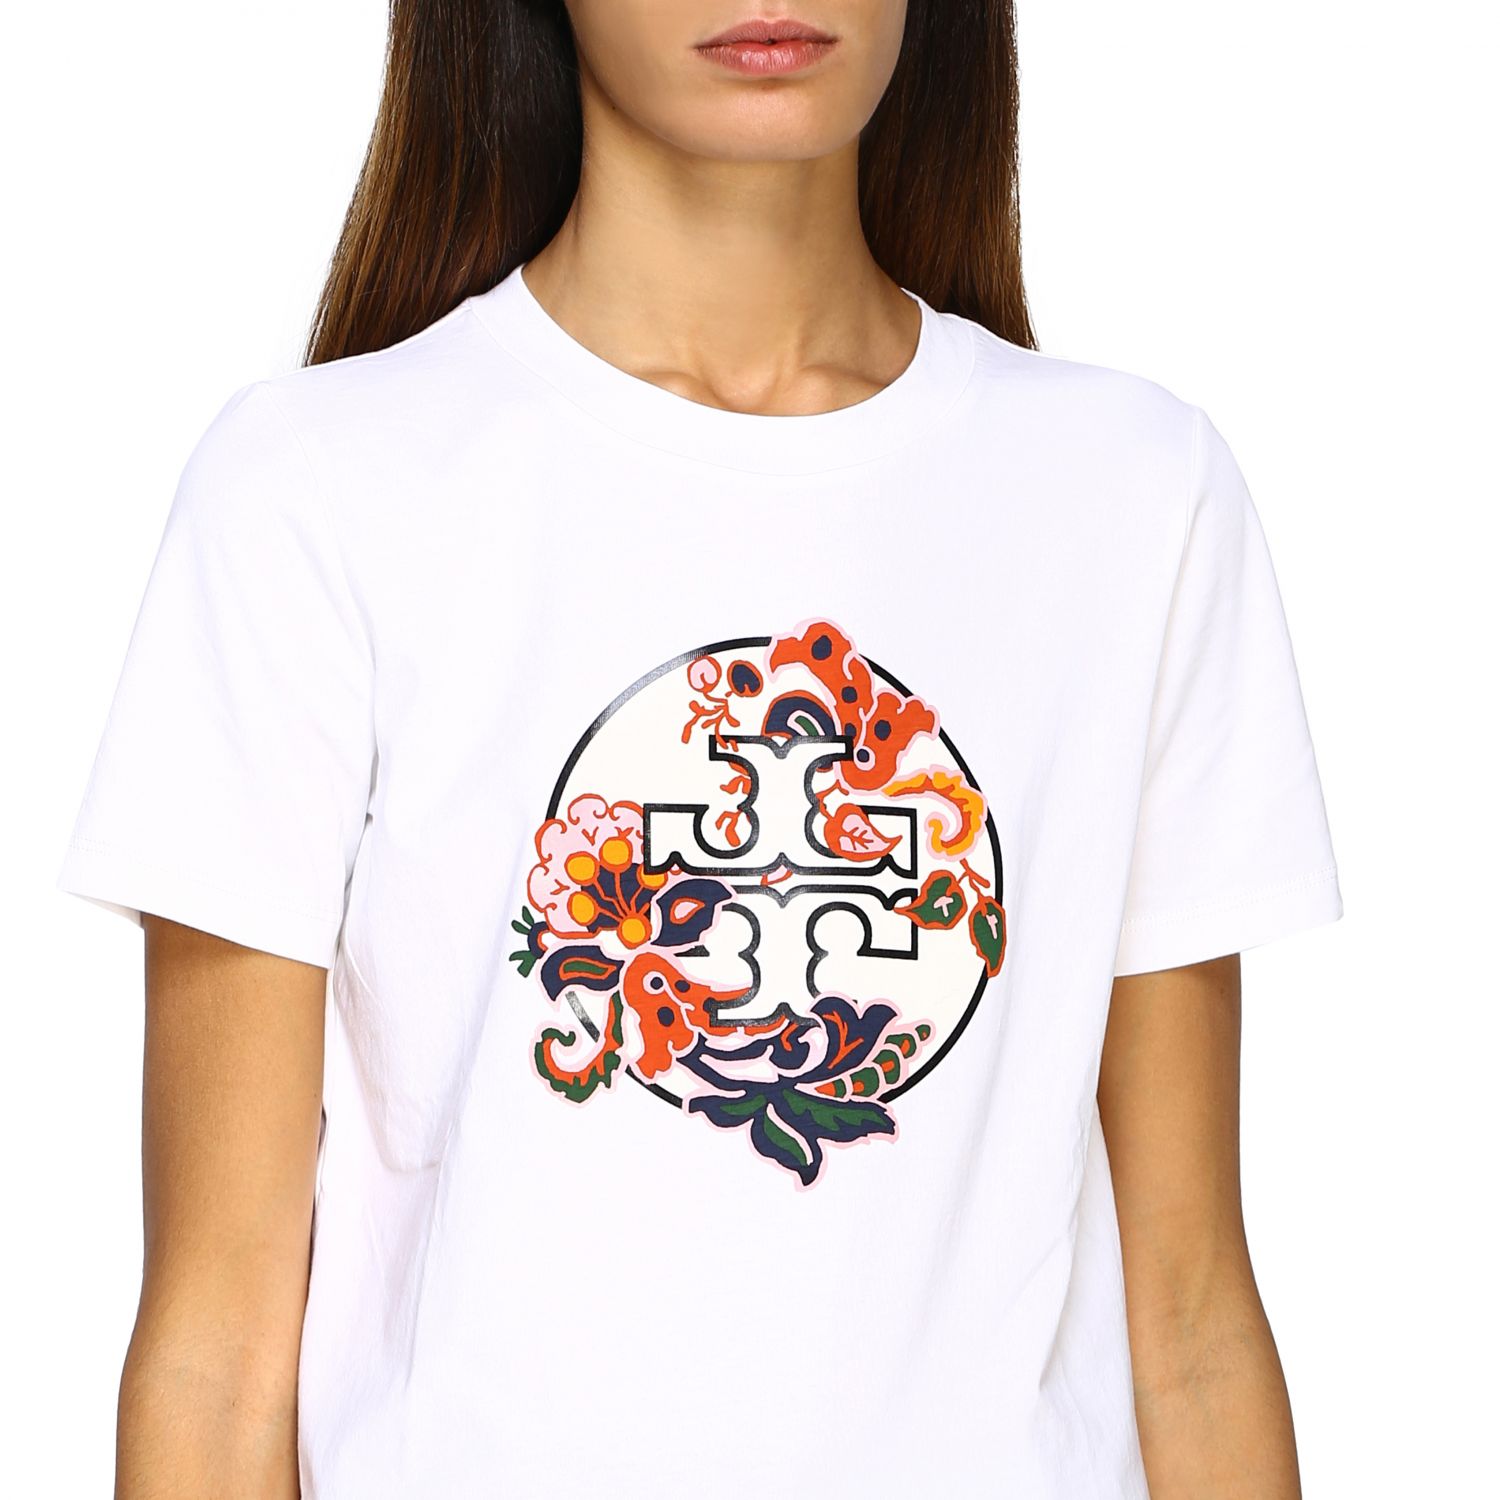 Tory Burch Outlet: T-shirt women | T-Shirt Tory Burch Women White | T ...